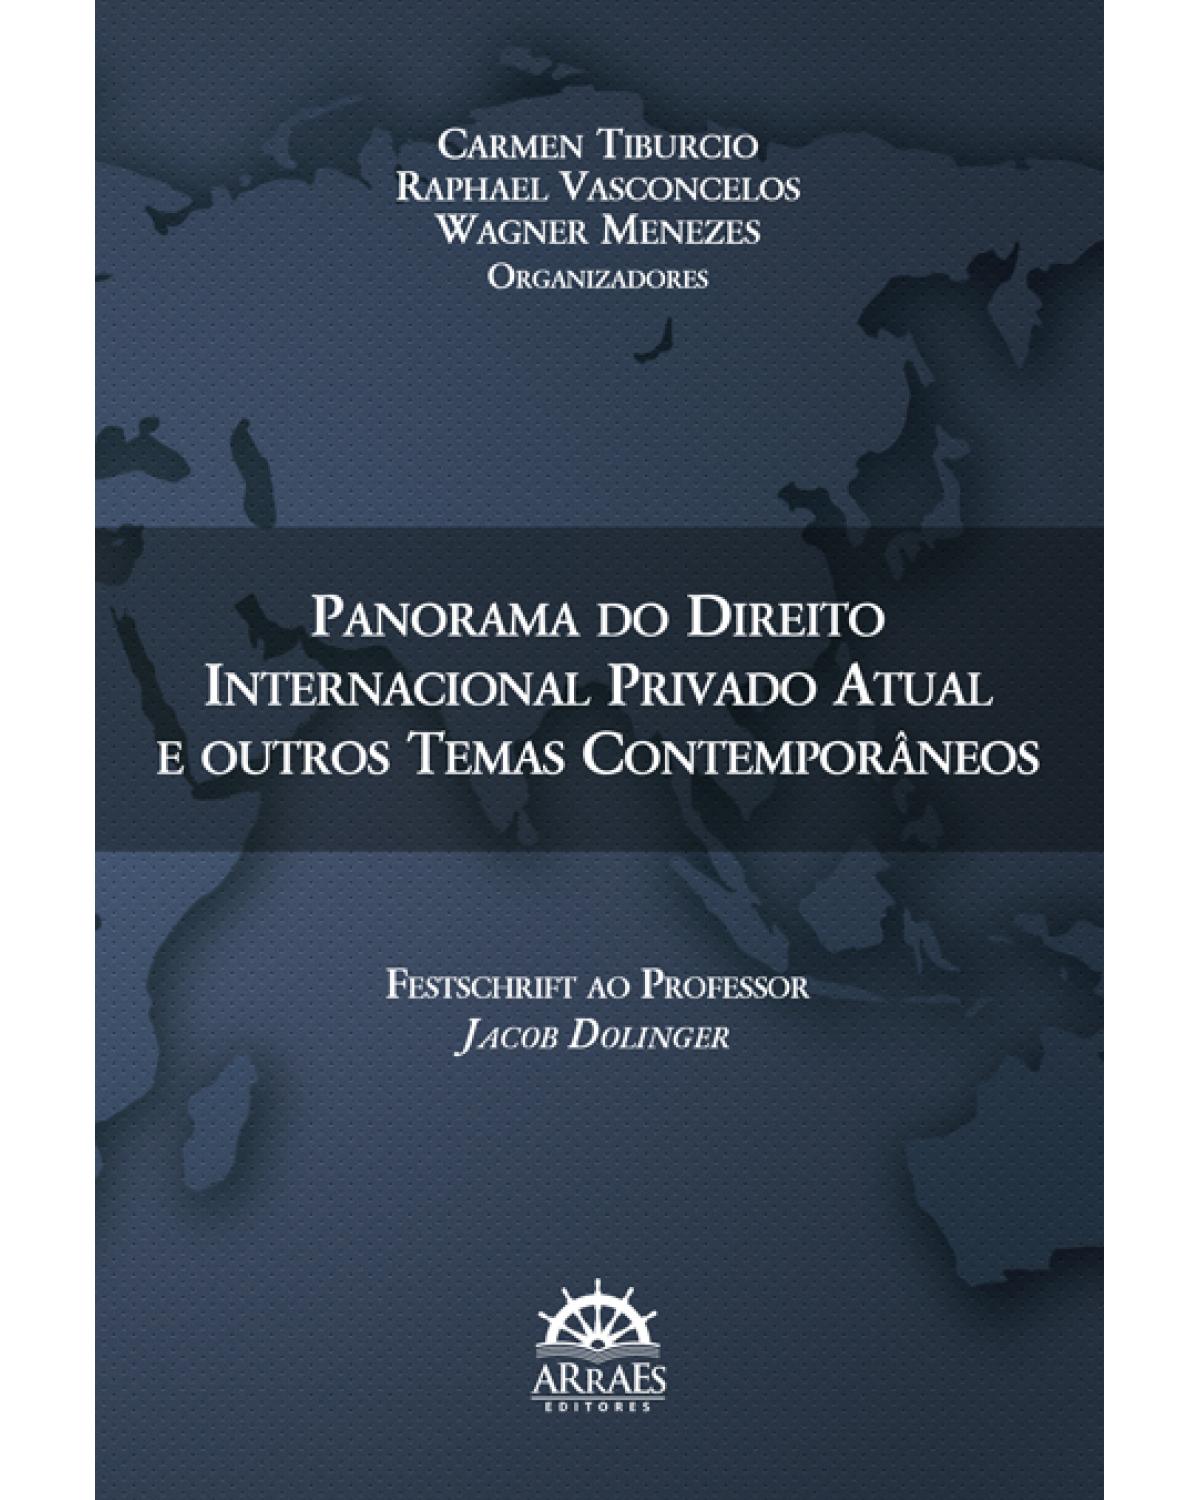 Panorama do direito internacional privado atual e outros temas contemporâneos - Festschrift ao professor Jacob Dolinger - 1ª Edição | 2015